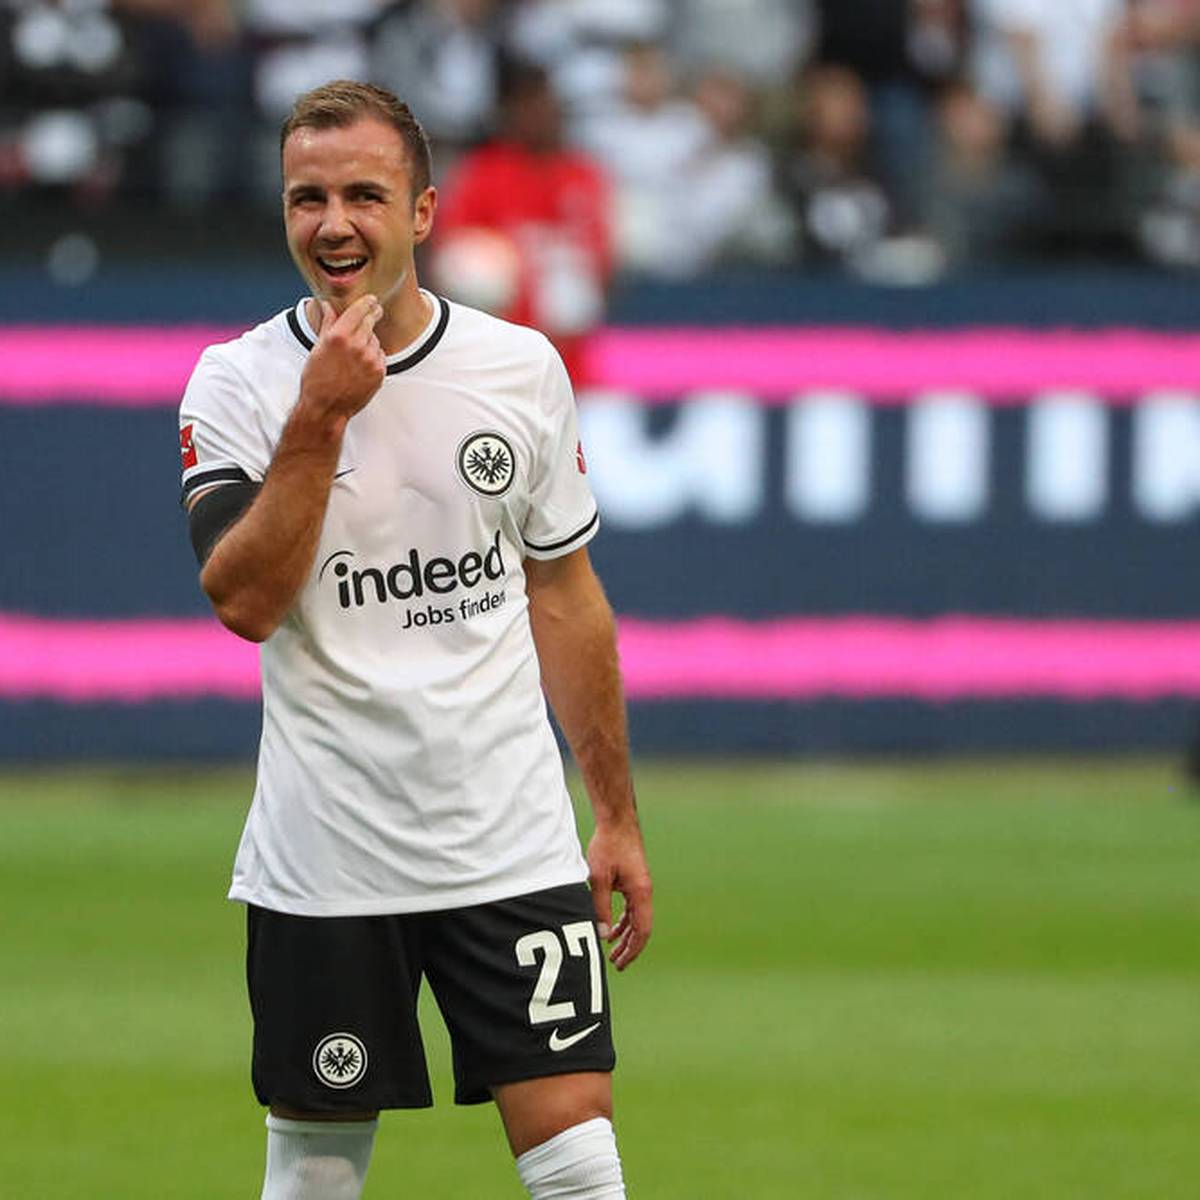 Mario Götze bereichert das Spiel von Eintracht Frankfurt. Überraschende Statistiken stellen den Weltmeister von 2014 in ein noch besseres Licht. Springt er noch mit auf den WM-Zug nach Katar?